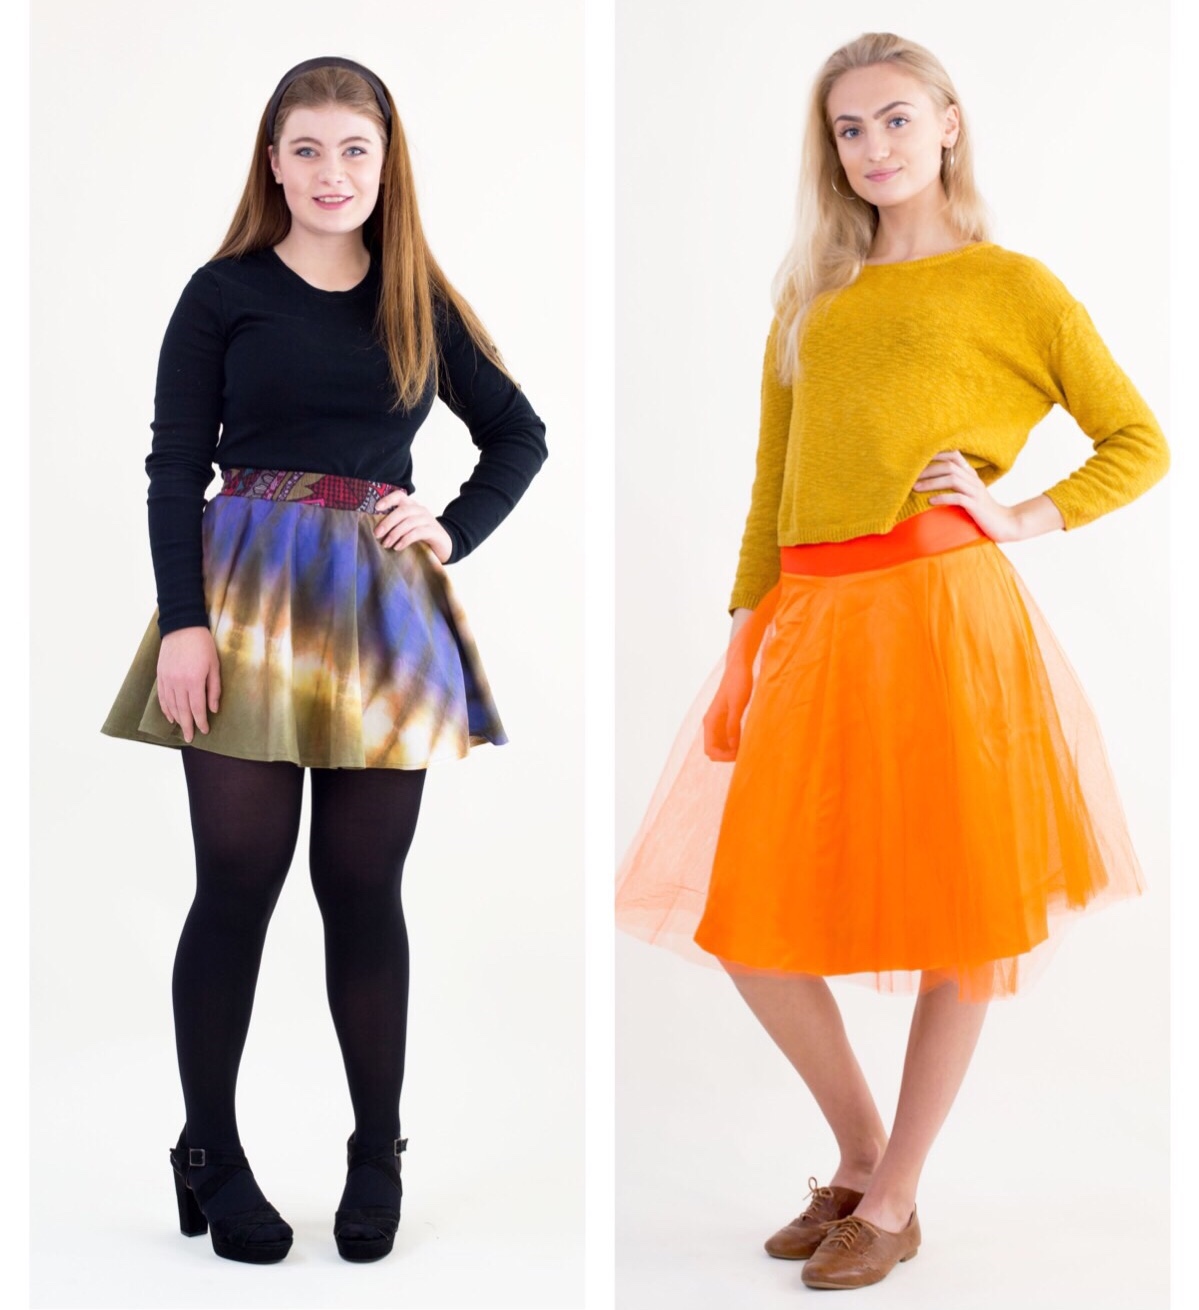 2 Refashioning style skirts